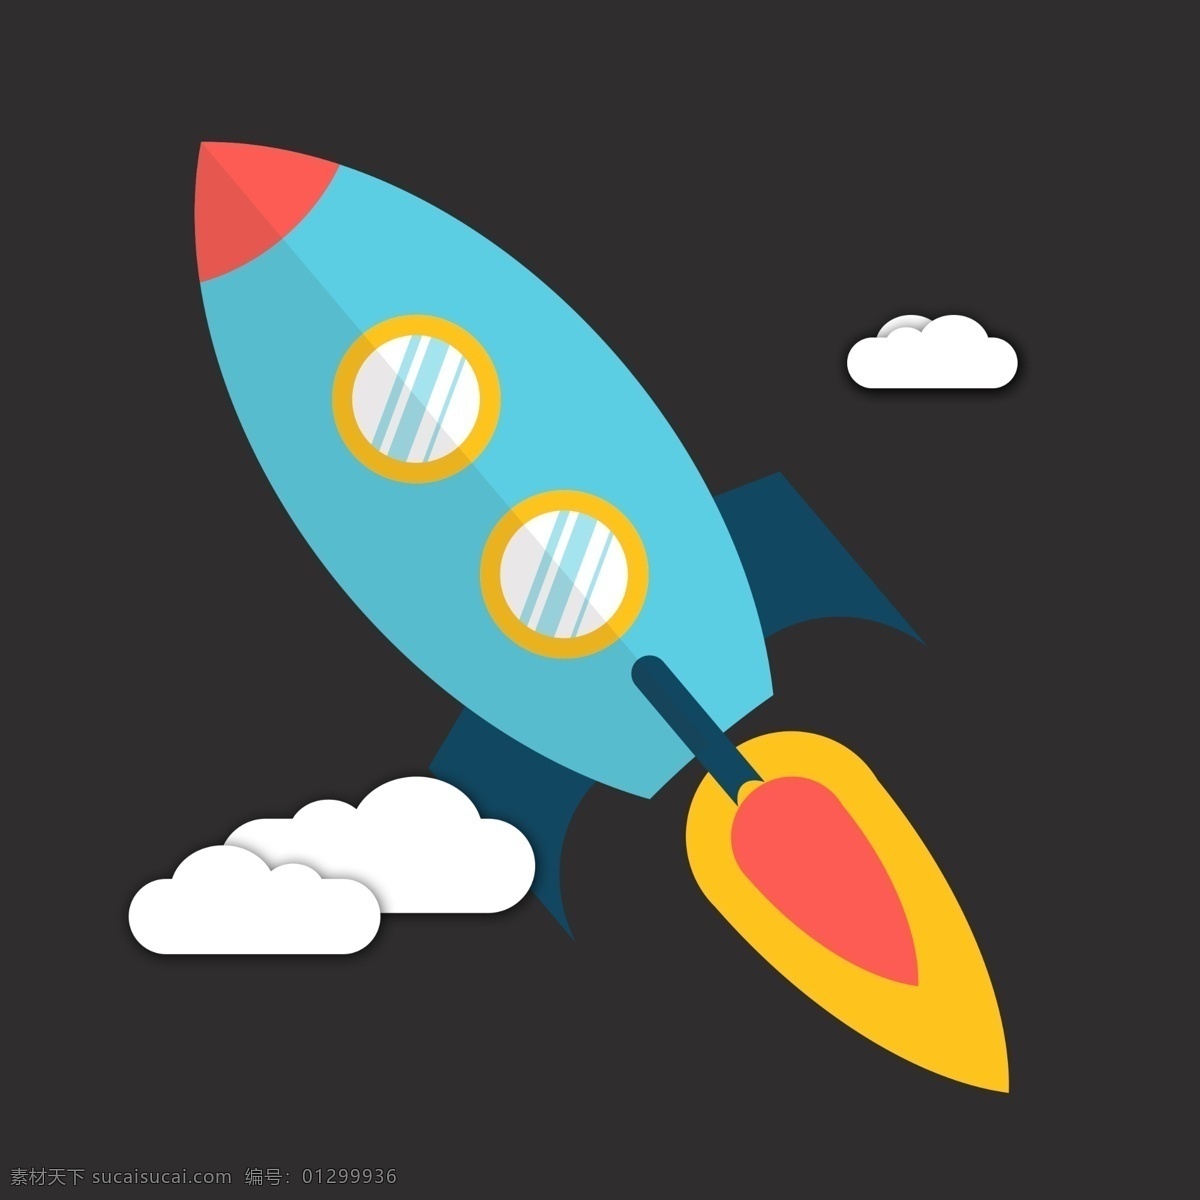 扁平化 火箭 logo 图案 icon 图标 飞天火箭 小火箭